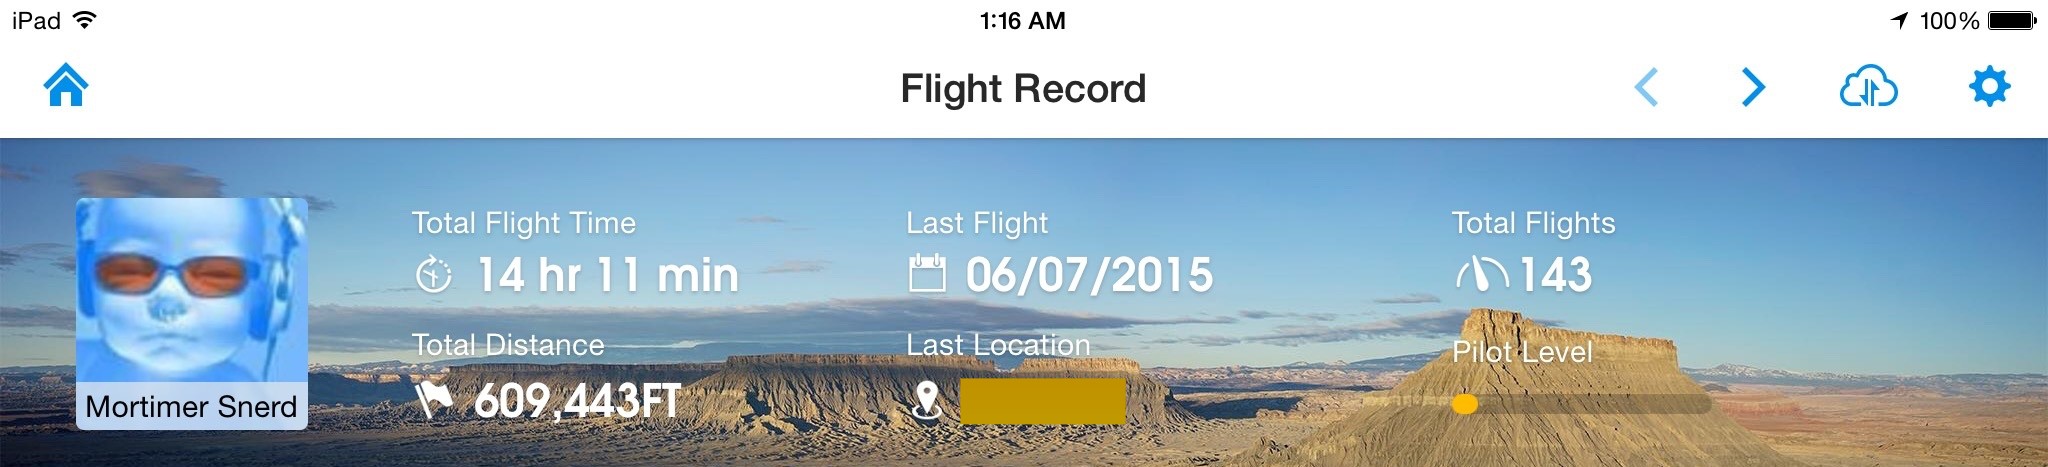 flight-record.jpg